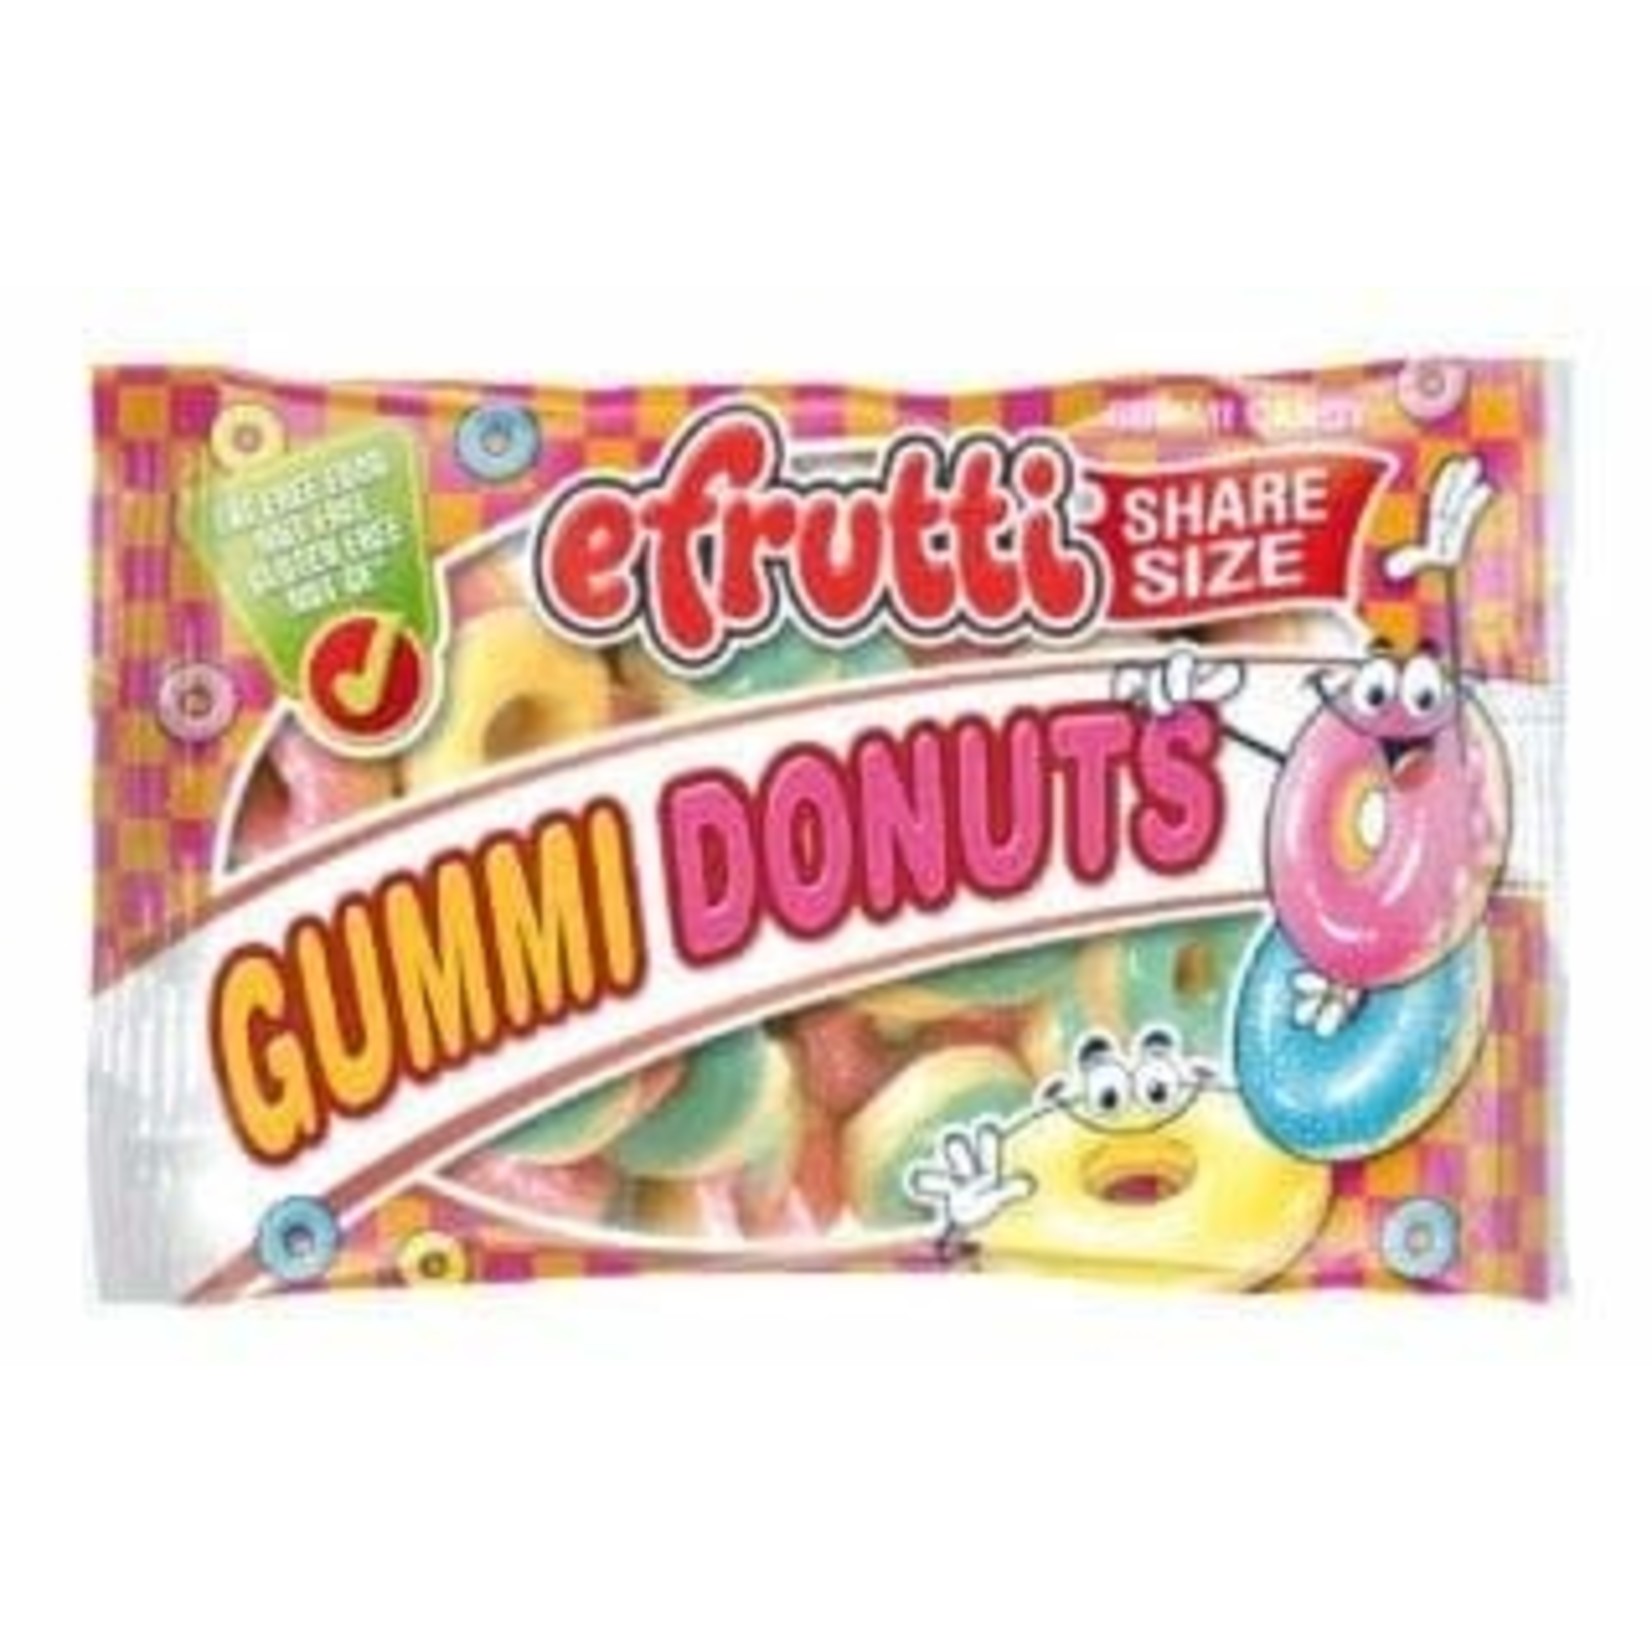 efrutti Gummi Donuts Share Size 12ct